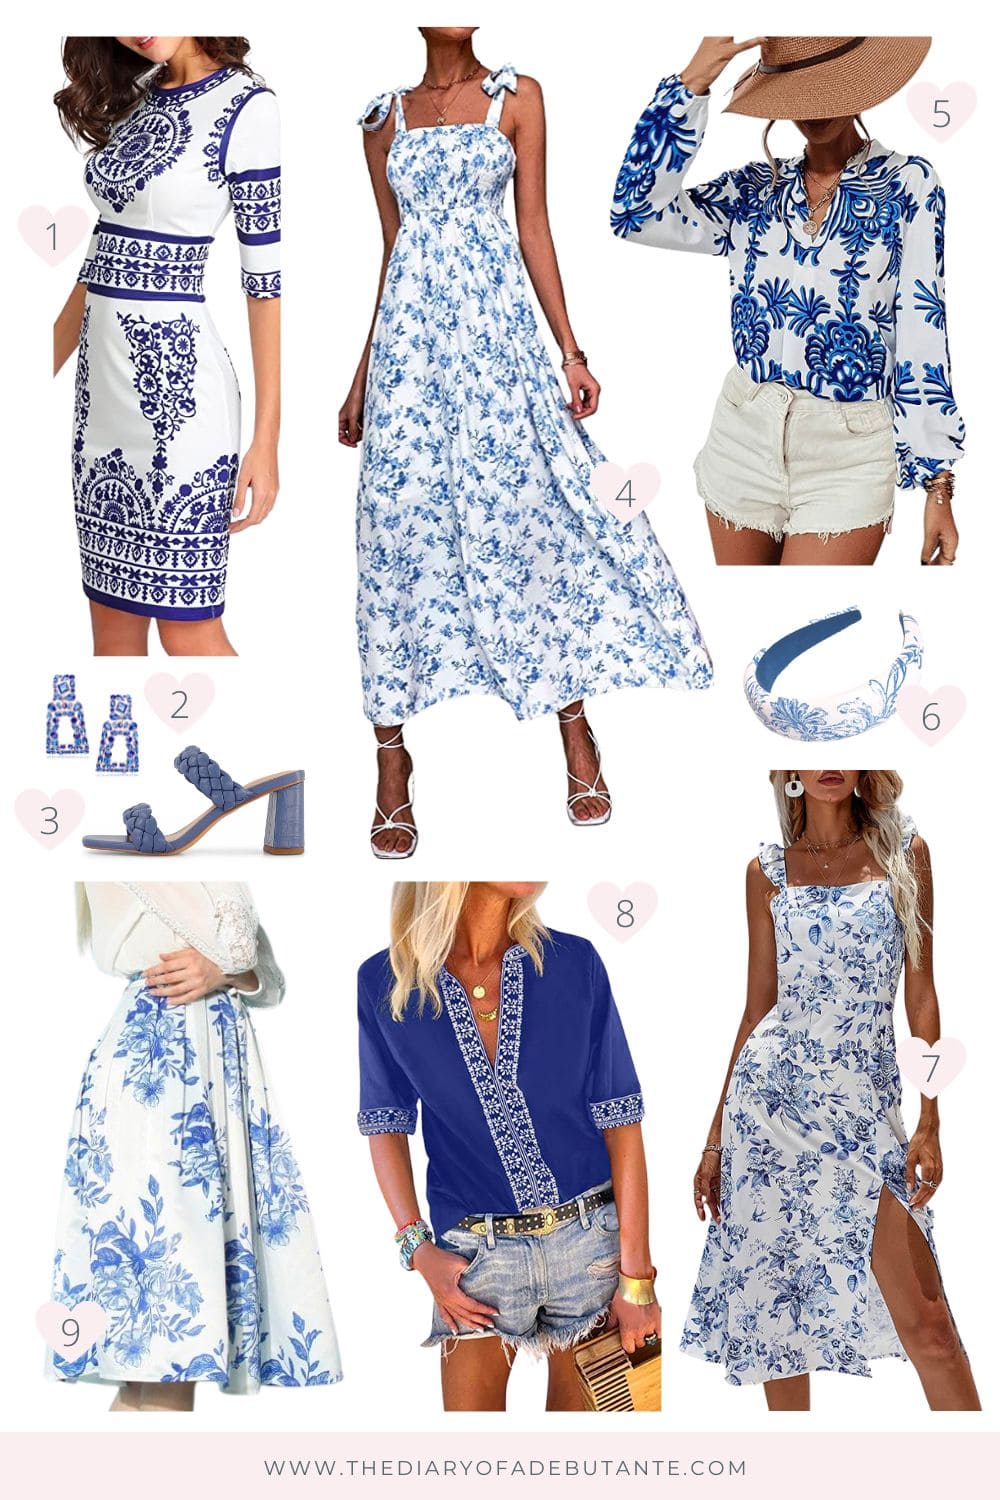 La blogueuse de mode abordable Stephanie Zeyka a rassemblé 9 de ses robes bleues et blanches préférées et des trouvailles inspirées de la chinoiserie d'Amazon pour moins de 50 $ sur Diary of a Debutante.